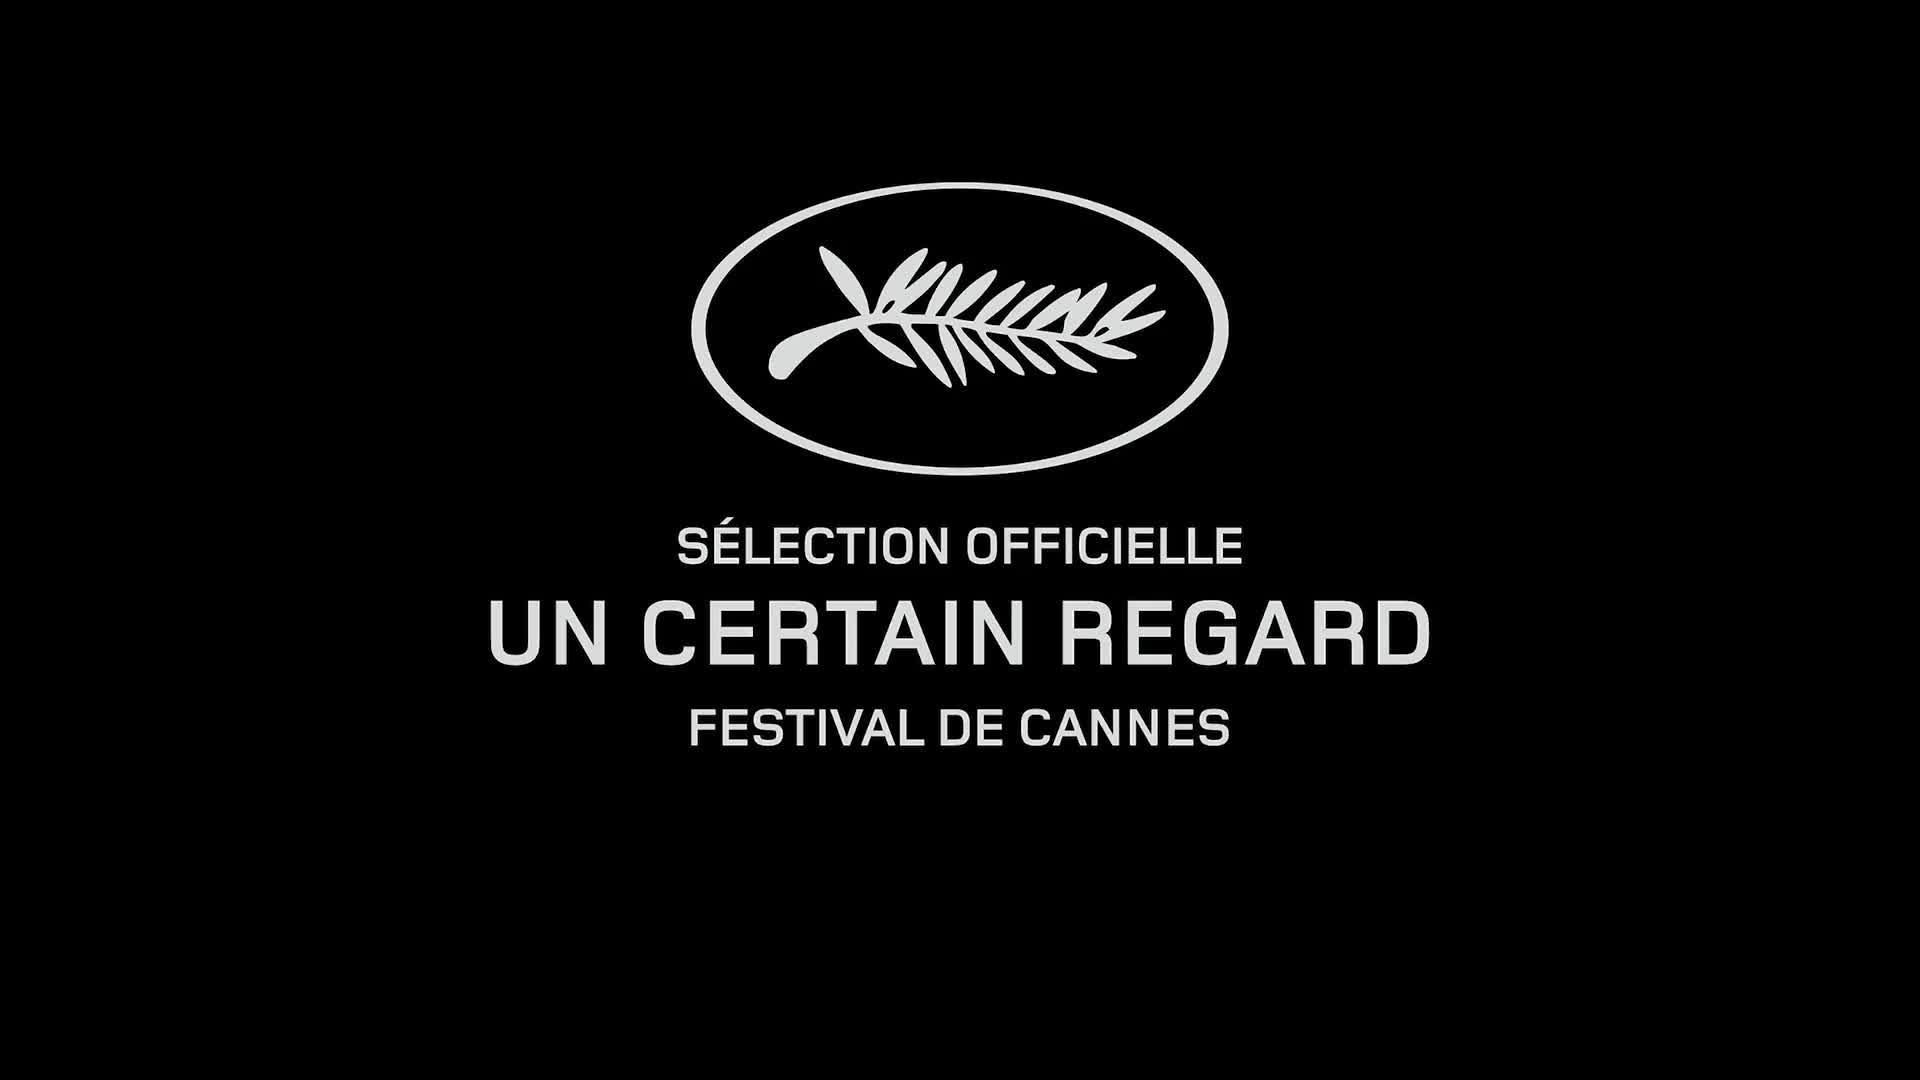 La sélection officielle des films Un certain regard  Festival de Cannes 2015